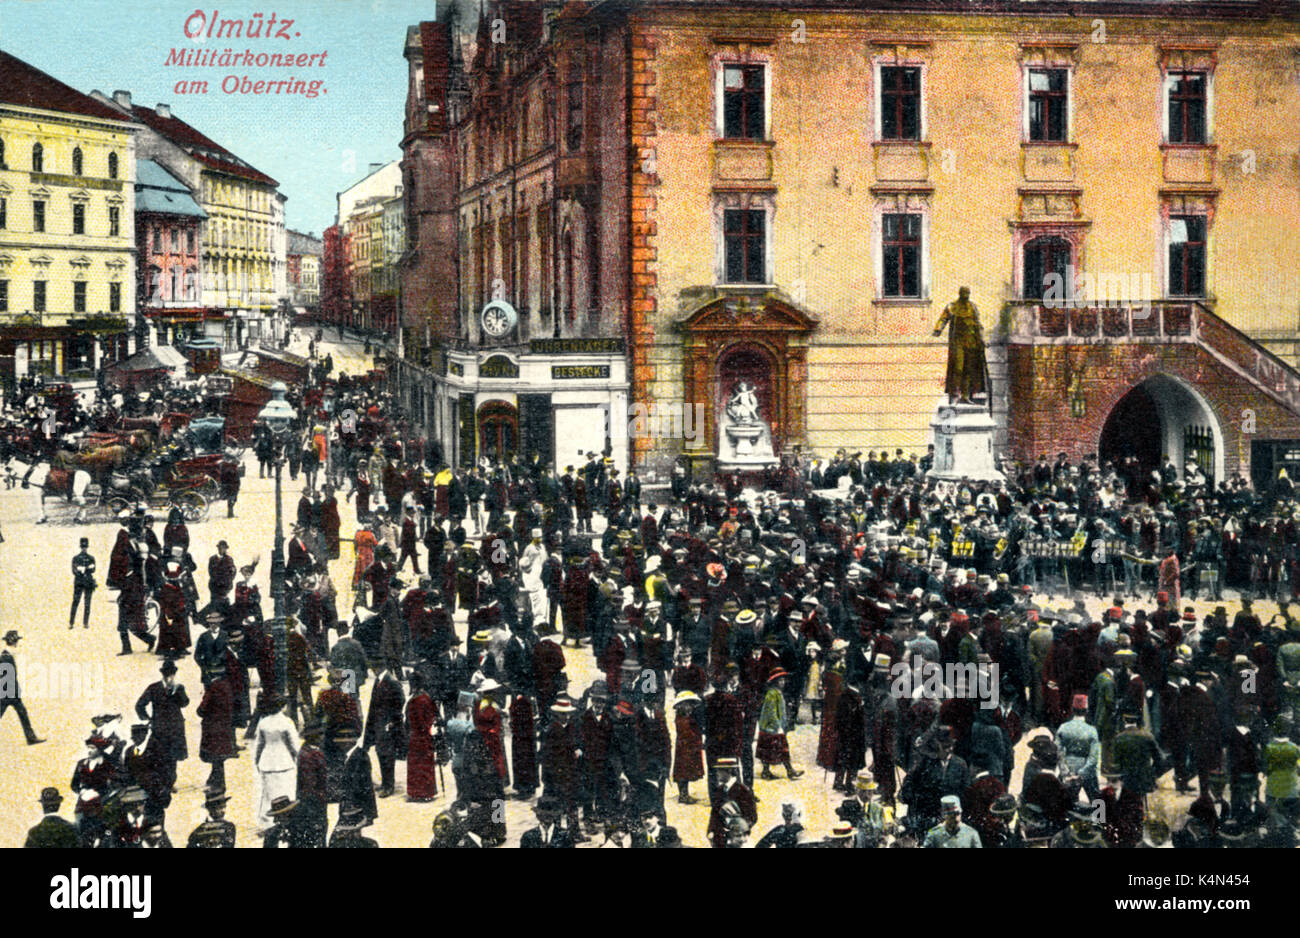 La Cecoslovacchia - OLMUTZ - Giro del secolo nb. Banda Militare, off square. (Tema utilizzato da Mahler) MAHLER aveva il suo secondo lavoro qui Foto Stock